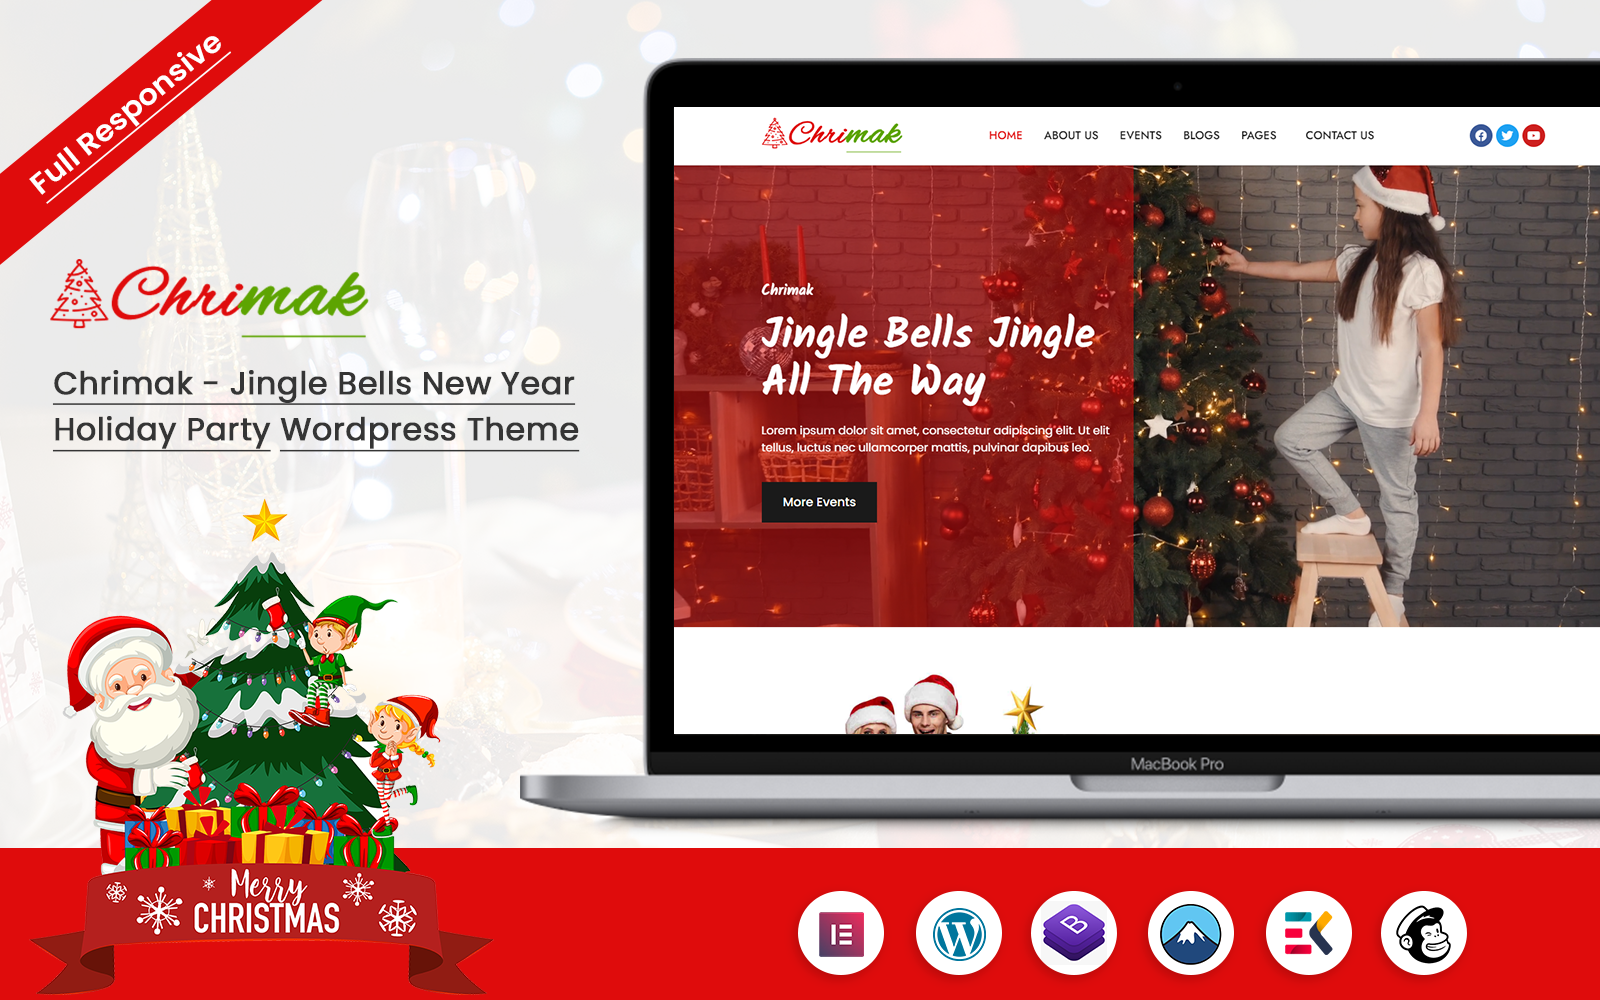 Chrimak - Jingle Bells New Year Holiday Party Wordpress Theme